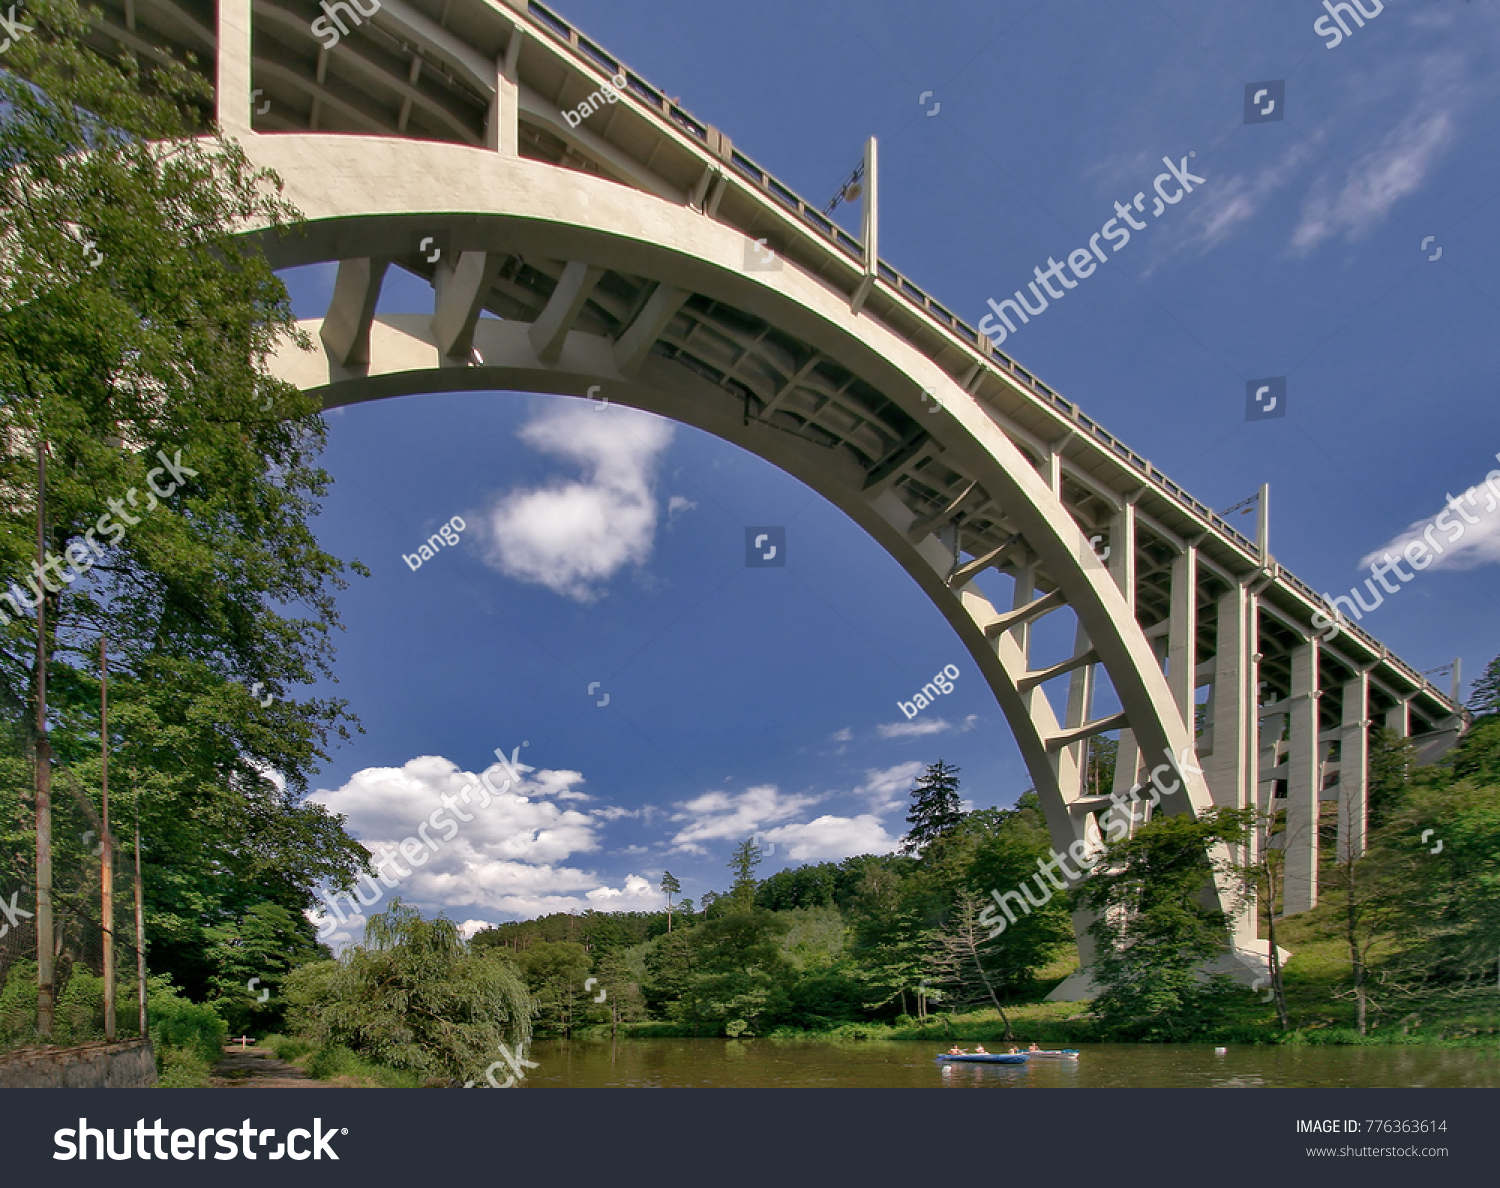 Bridge called "Duha" - Bechyne Czech Republic #776363614